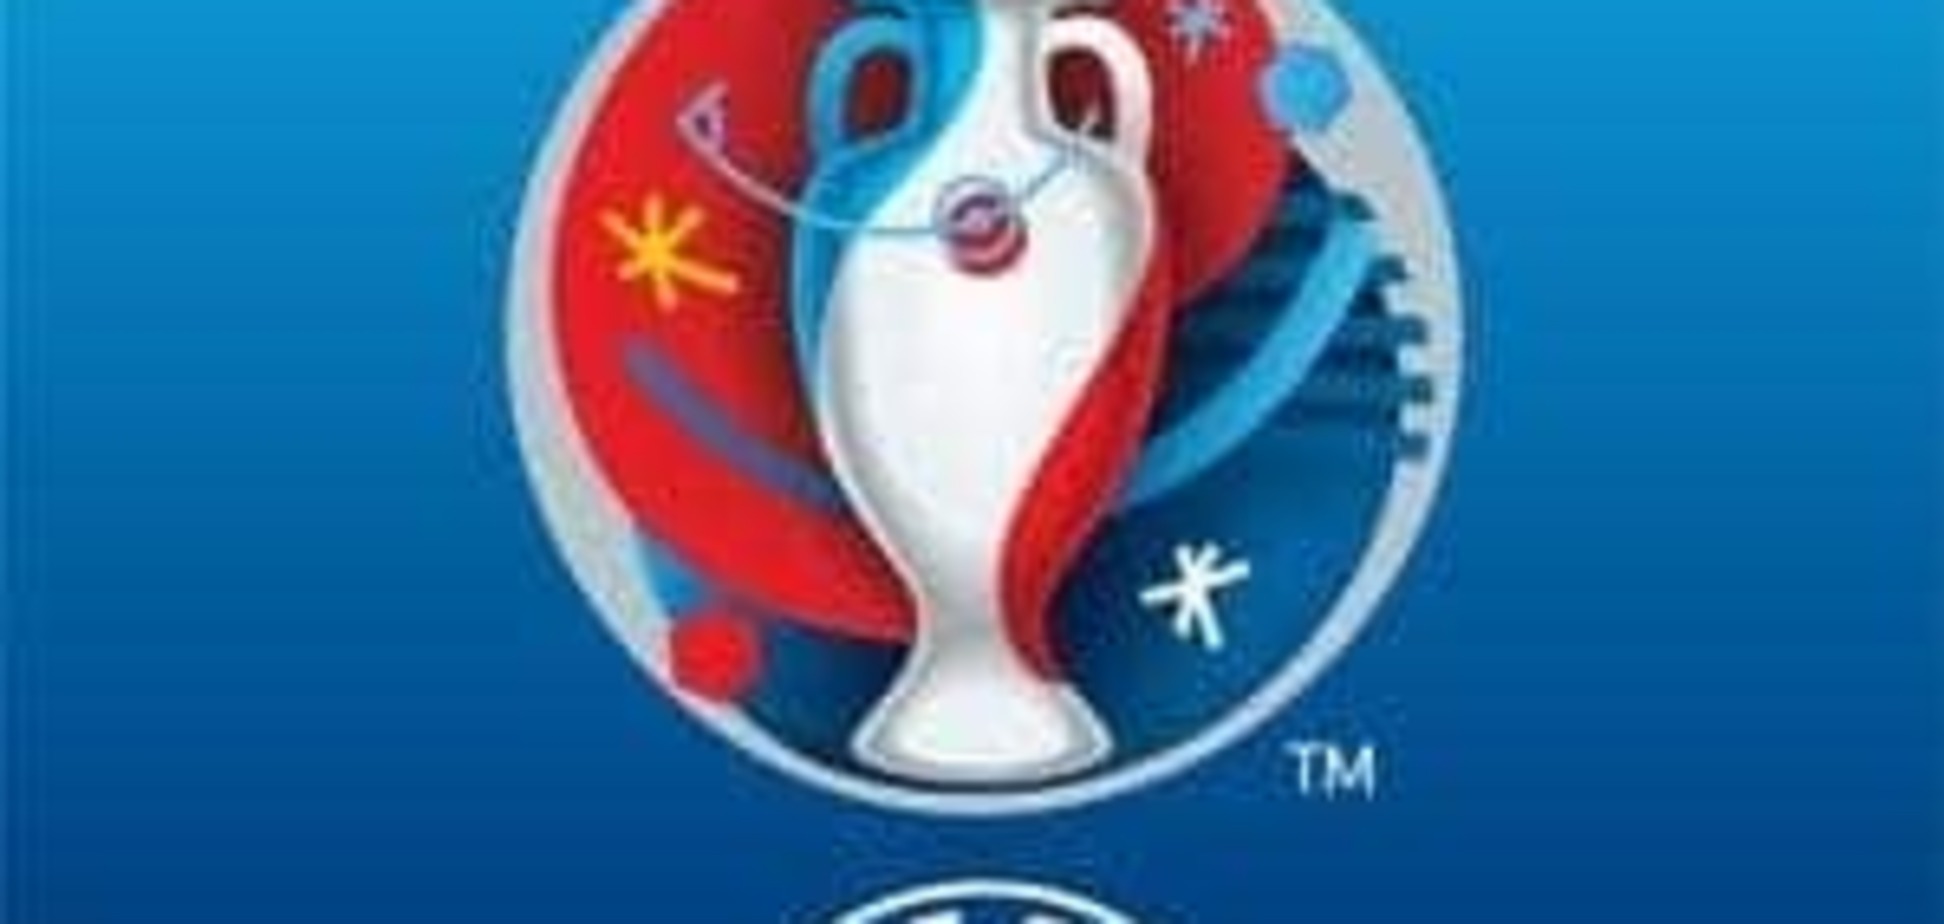 Евро-2016. Эксперты перед финалом напомнили Португалии о французском проклятии